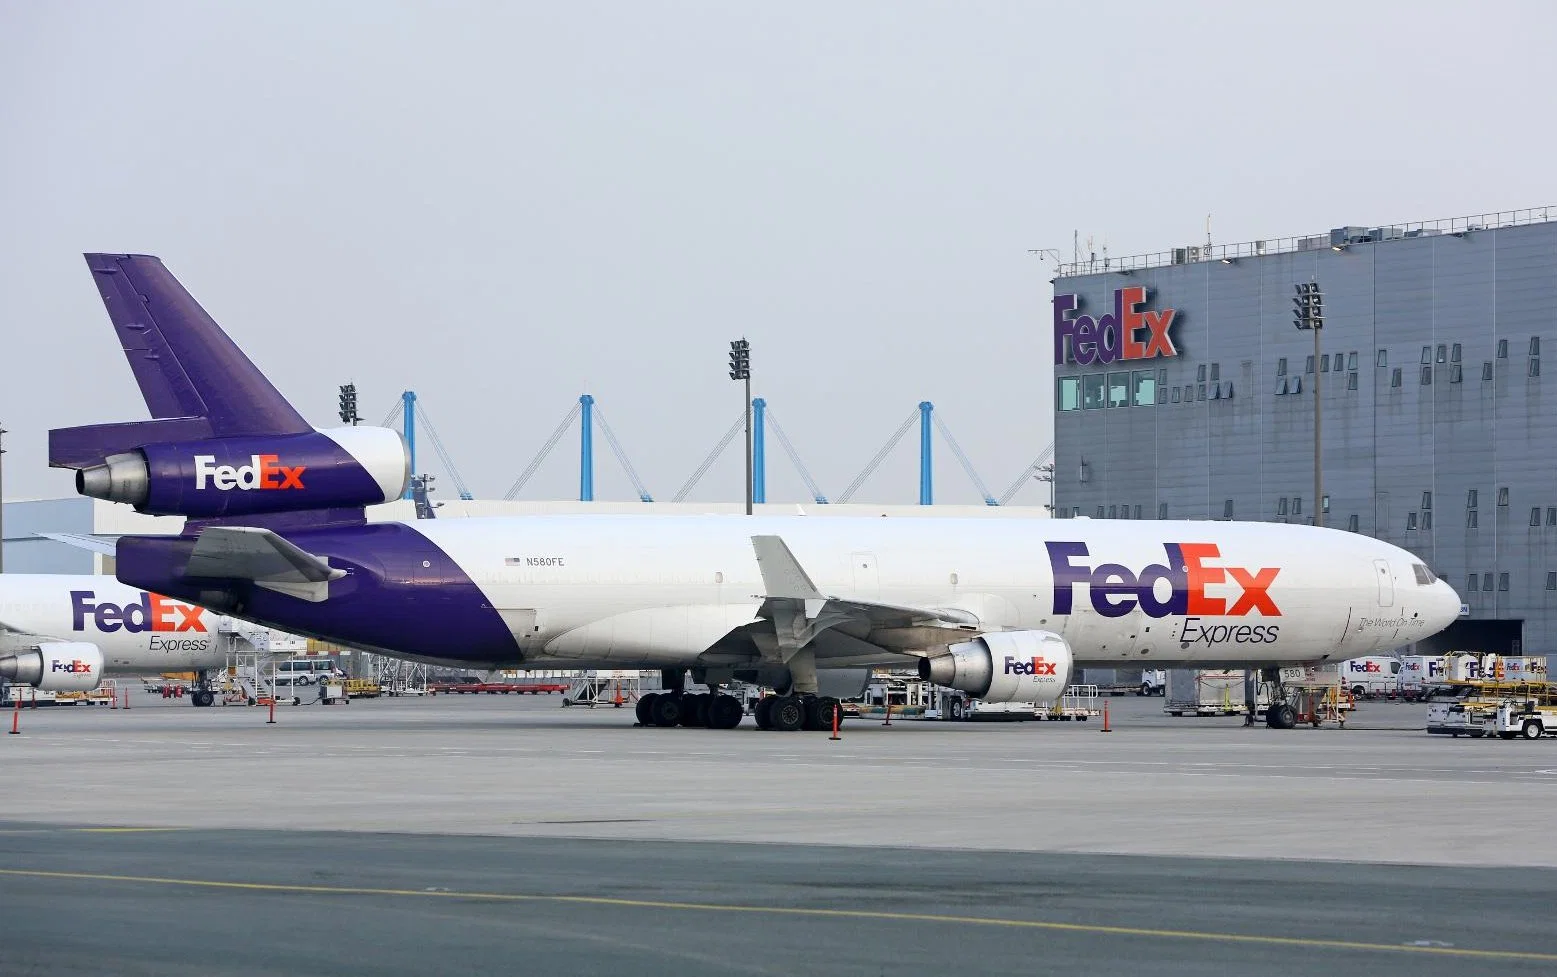 Servicio de mensajería UPS/FedEx entrega puerta a puerta a Georgewashington, Boston, Chicago, Nueva York, San Francisco desde Guangzhou, Shenzhen, Shanghai en China